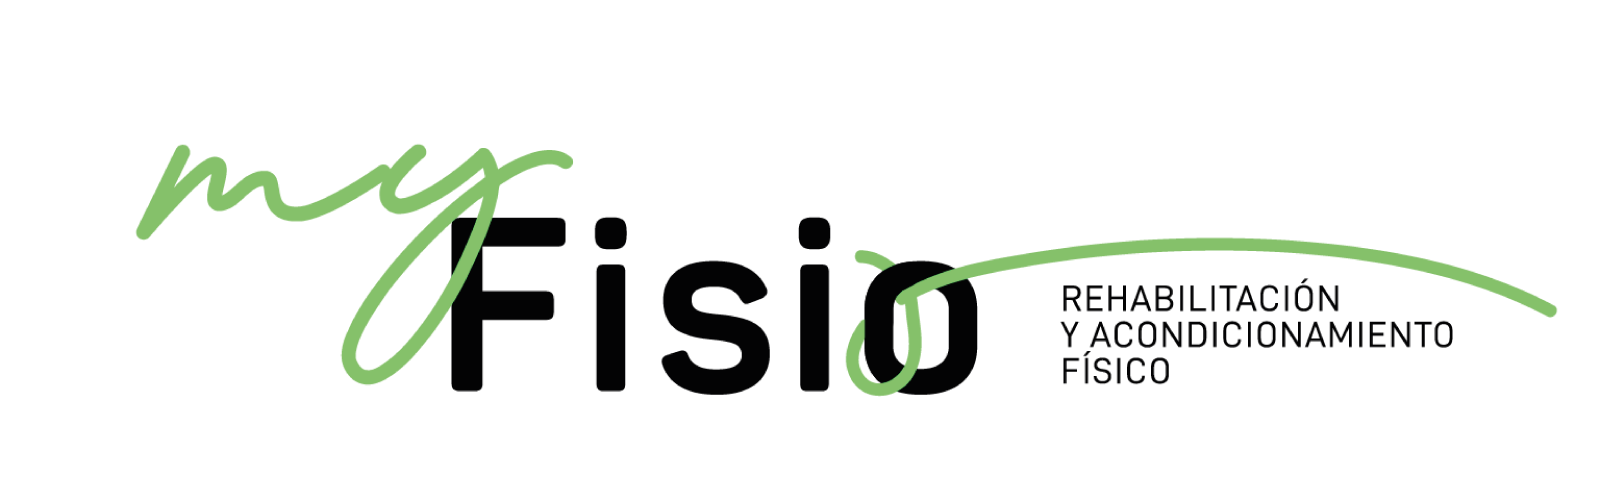 myfisio-logo